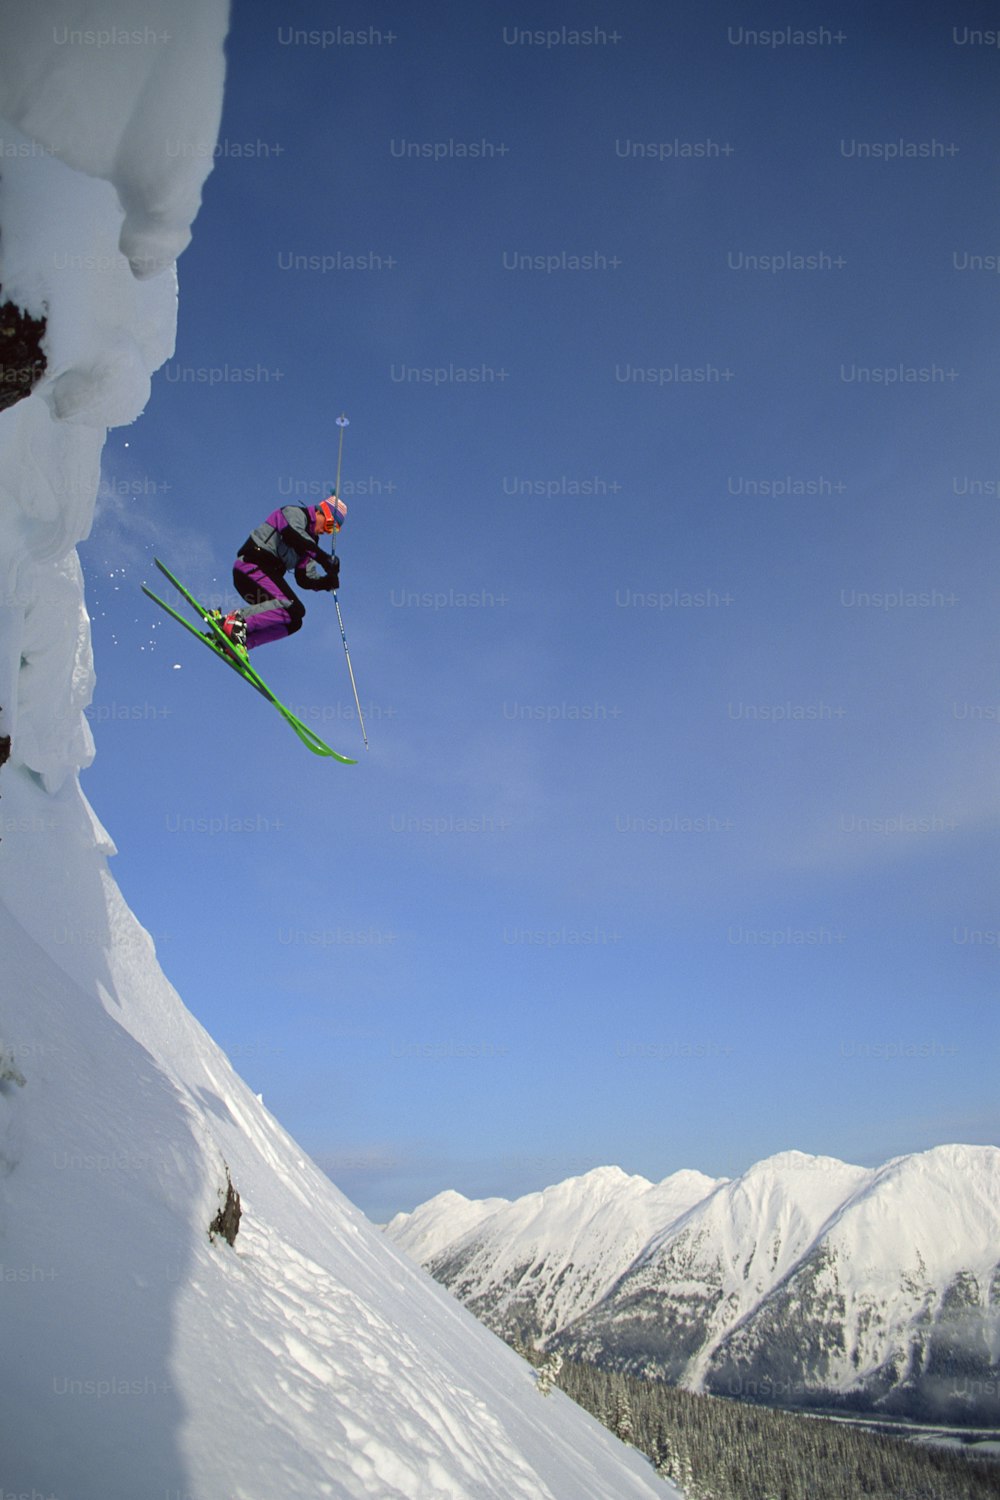 스키 한 켤레를 타고 공중으로 ��점프하는 사람